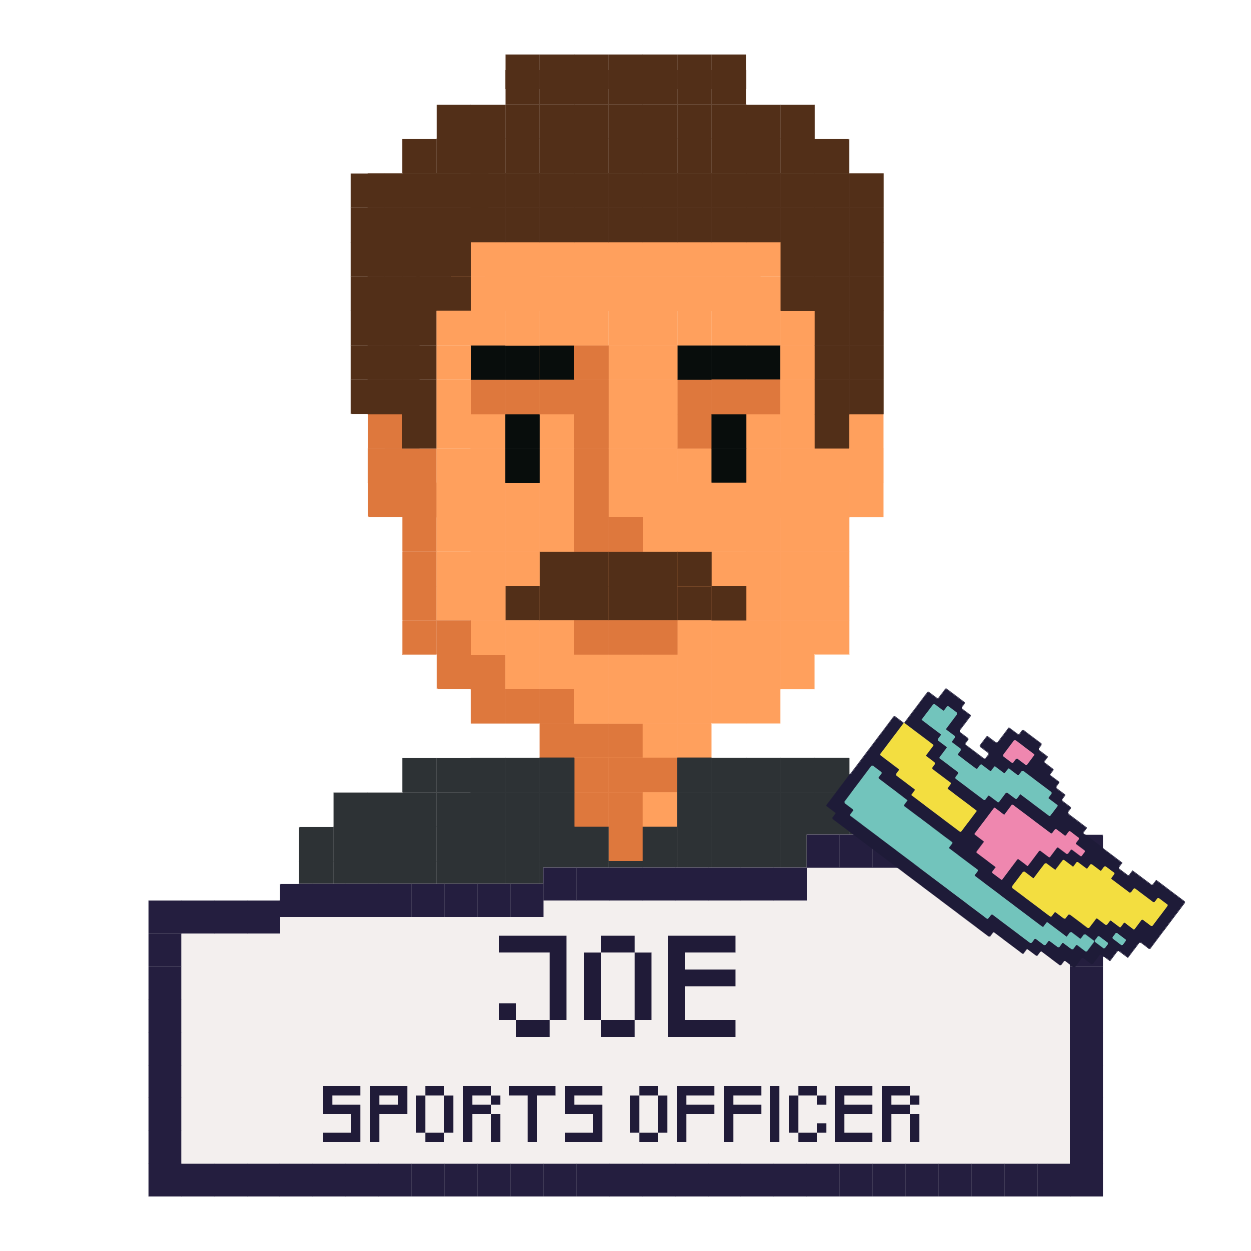 Sports Officer Joe Hyett he/him, click for his full profile